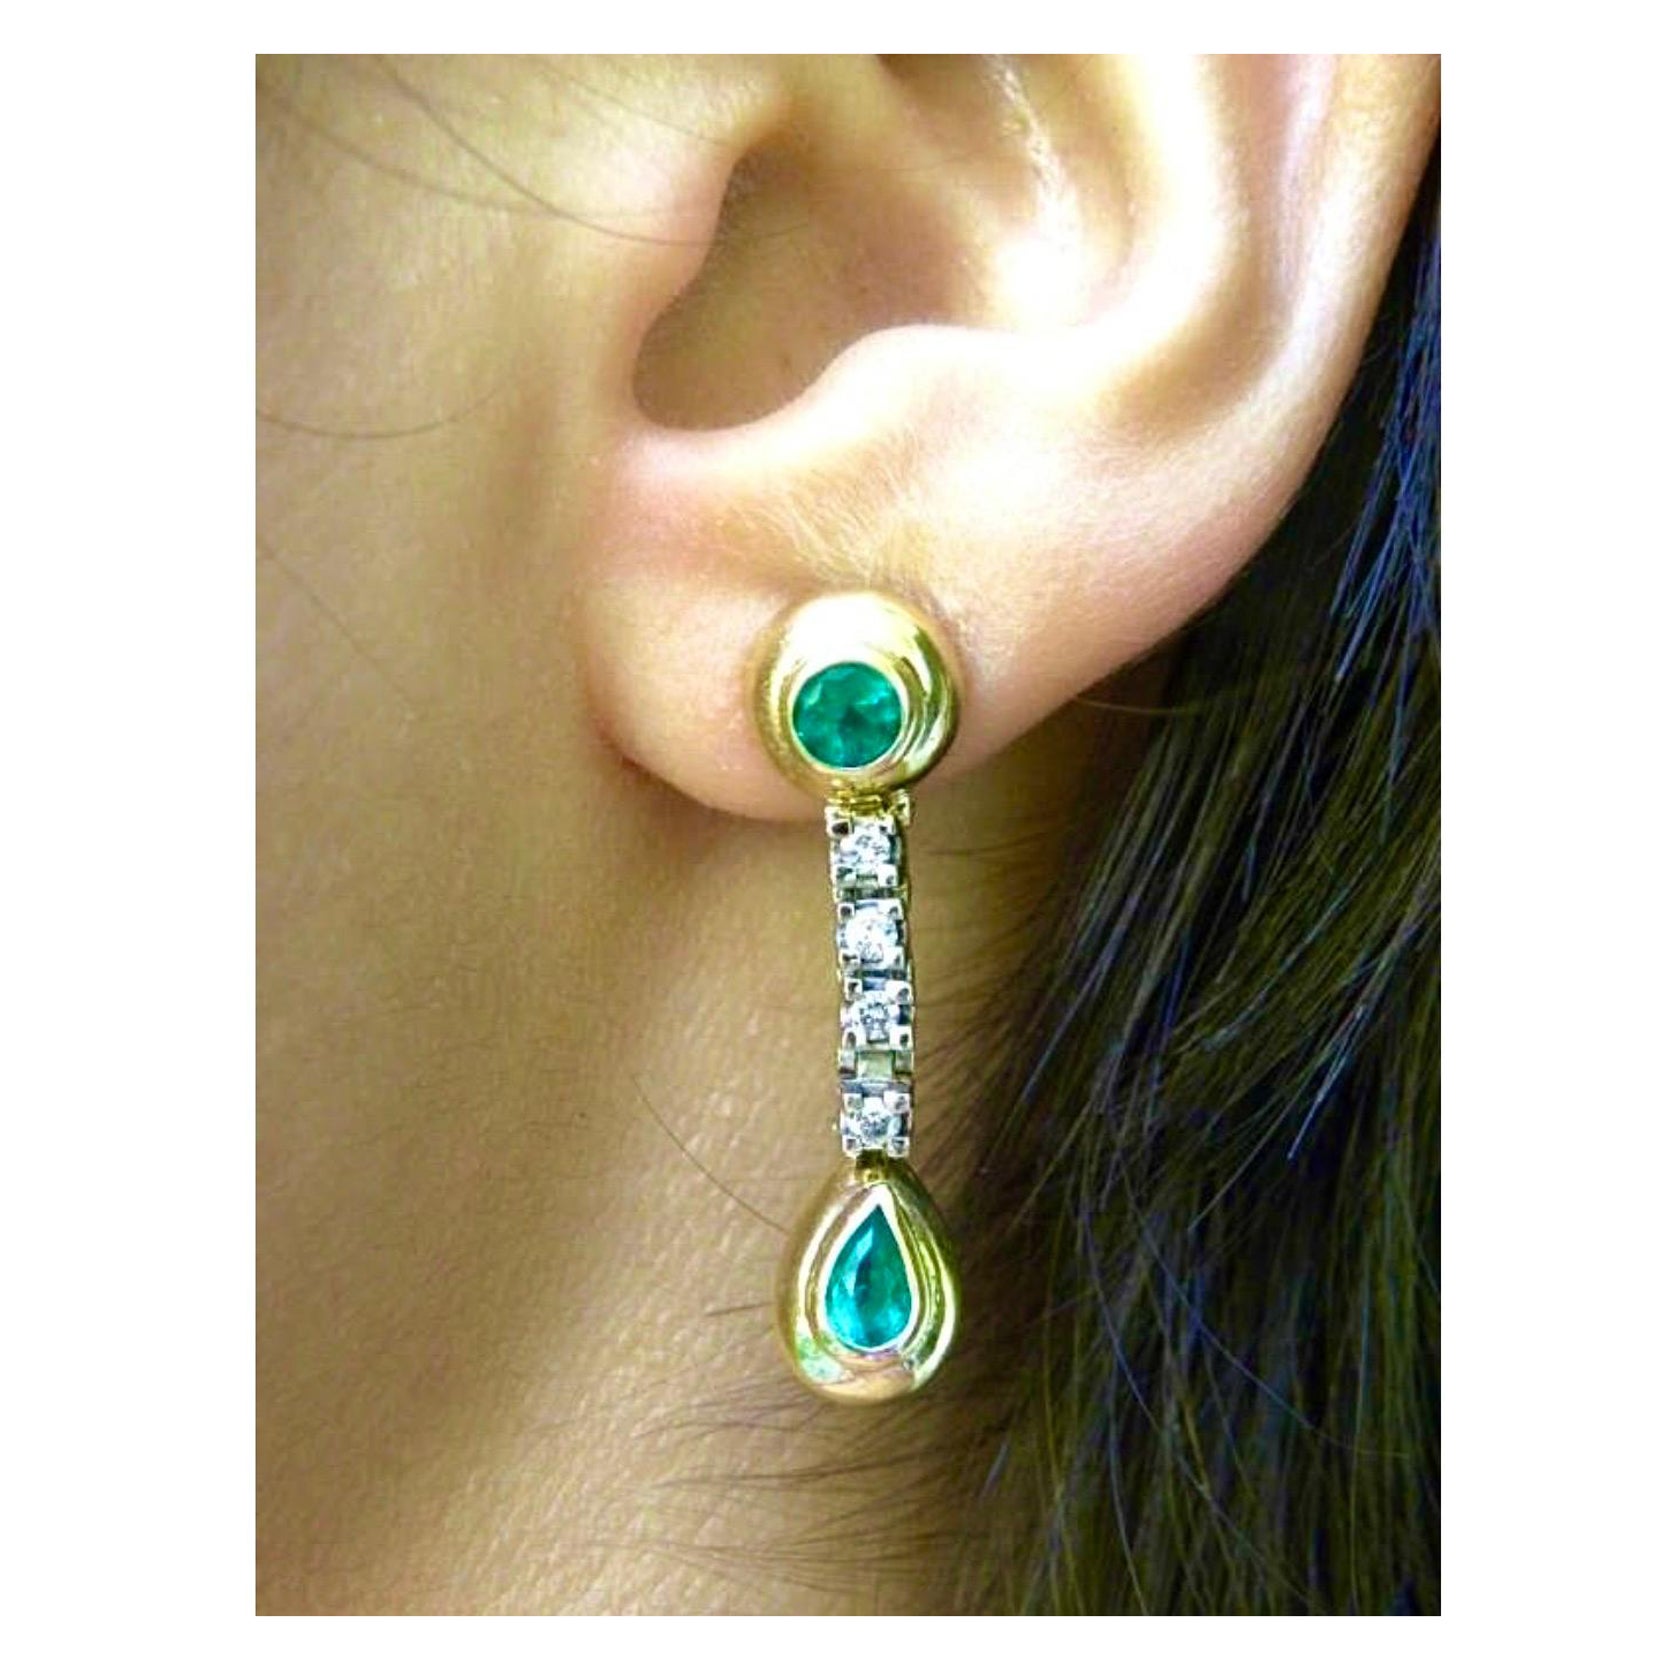 Wunderschöne zweifarbige Ohrringe aus Gold
Merkmal 4 (2- rund/2-Birnenform)
Echte und natürliche AAA-Smaragde aus Kolumbien 
die eine intensiv mittelgrüne Farbe haben - VS. Sie sind sehr schimmernd und sauber. Die 4 Smaragde sind in 18-karätigem